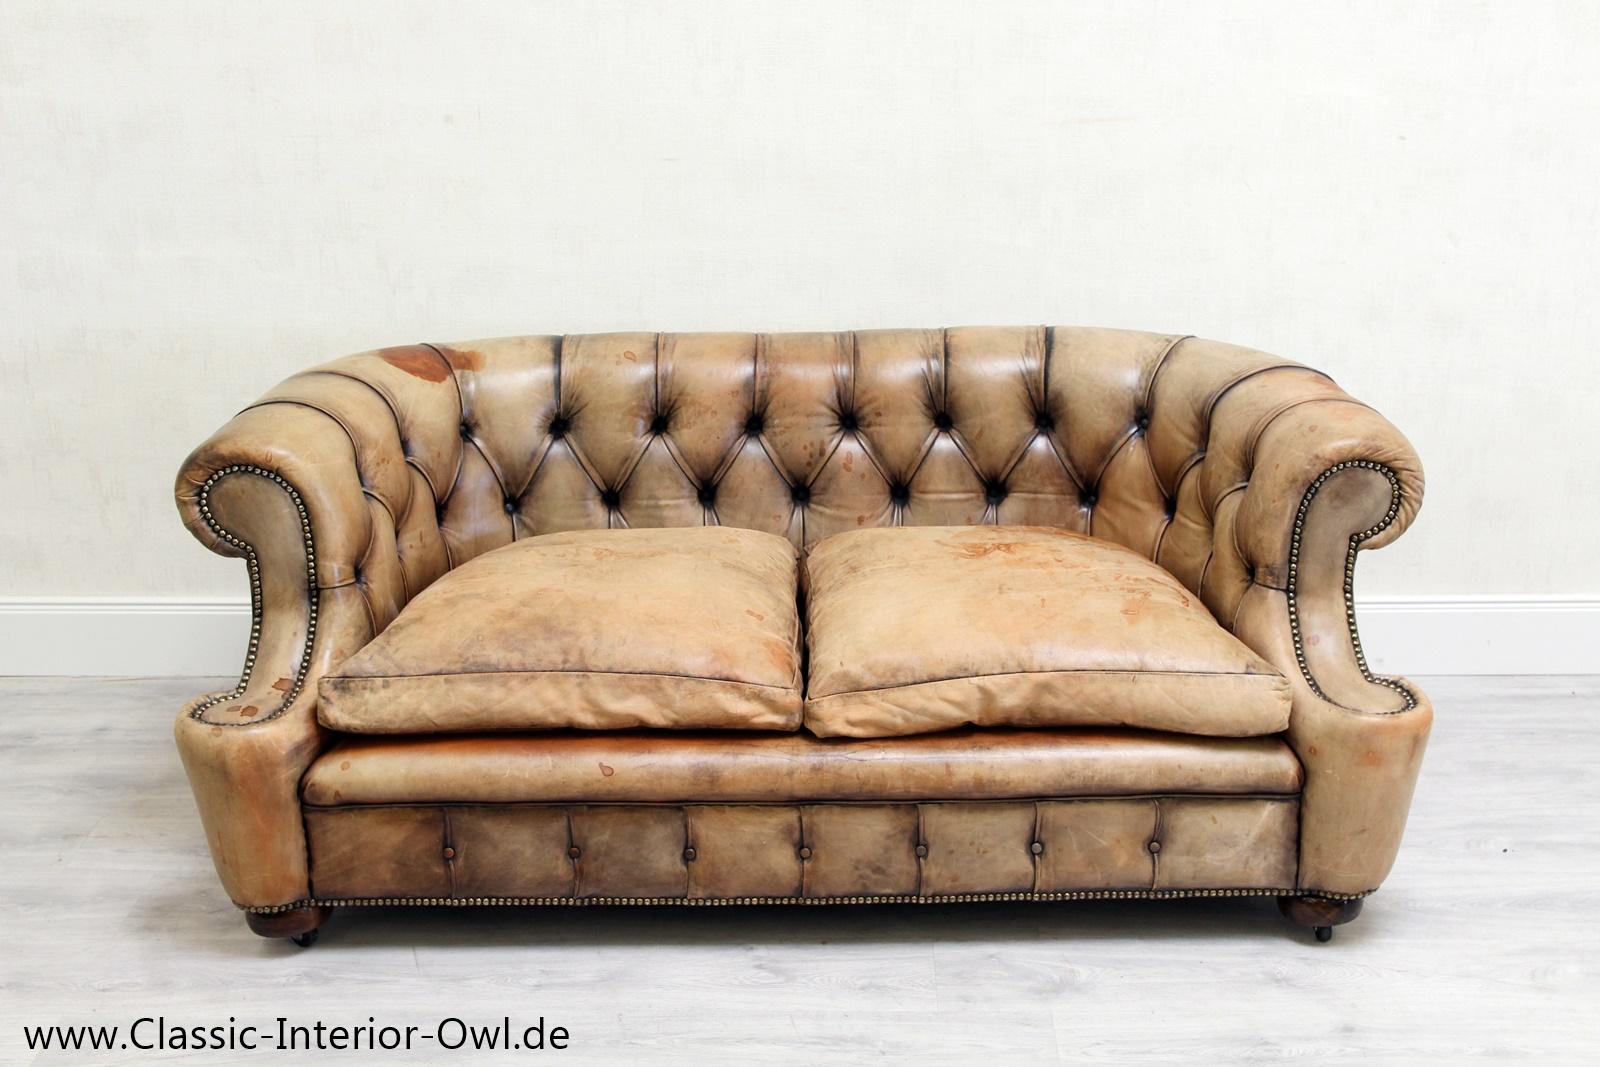 Zustand: Das Sofa ist in einem SEHR gutem Zustand, es hat normale Gebrauchtspuren (Patina)

Das sofa ist sauber und eingefettet, die Möbel kann sofort benutzt werden.
Polster ist in einem gutem Zustand (siehe Fotos).

Farbe: Grau/Braun
Kissen: